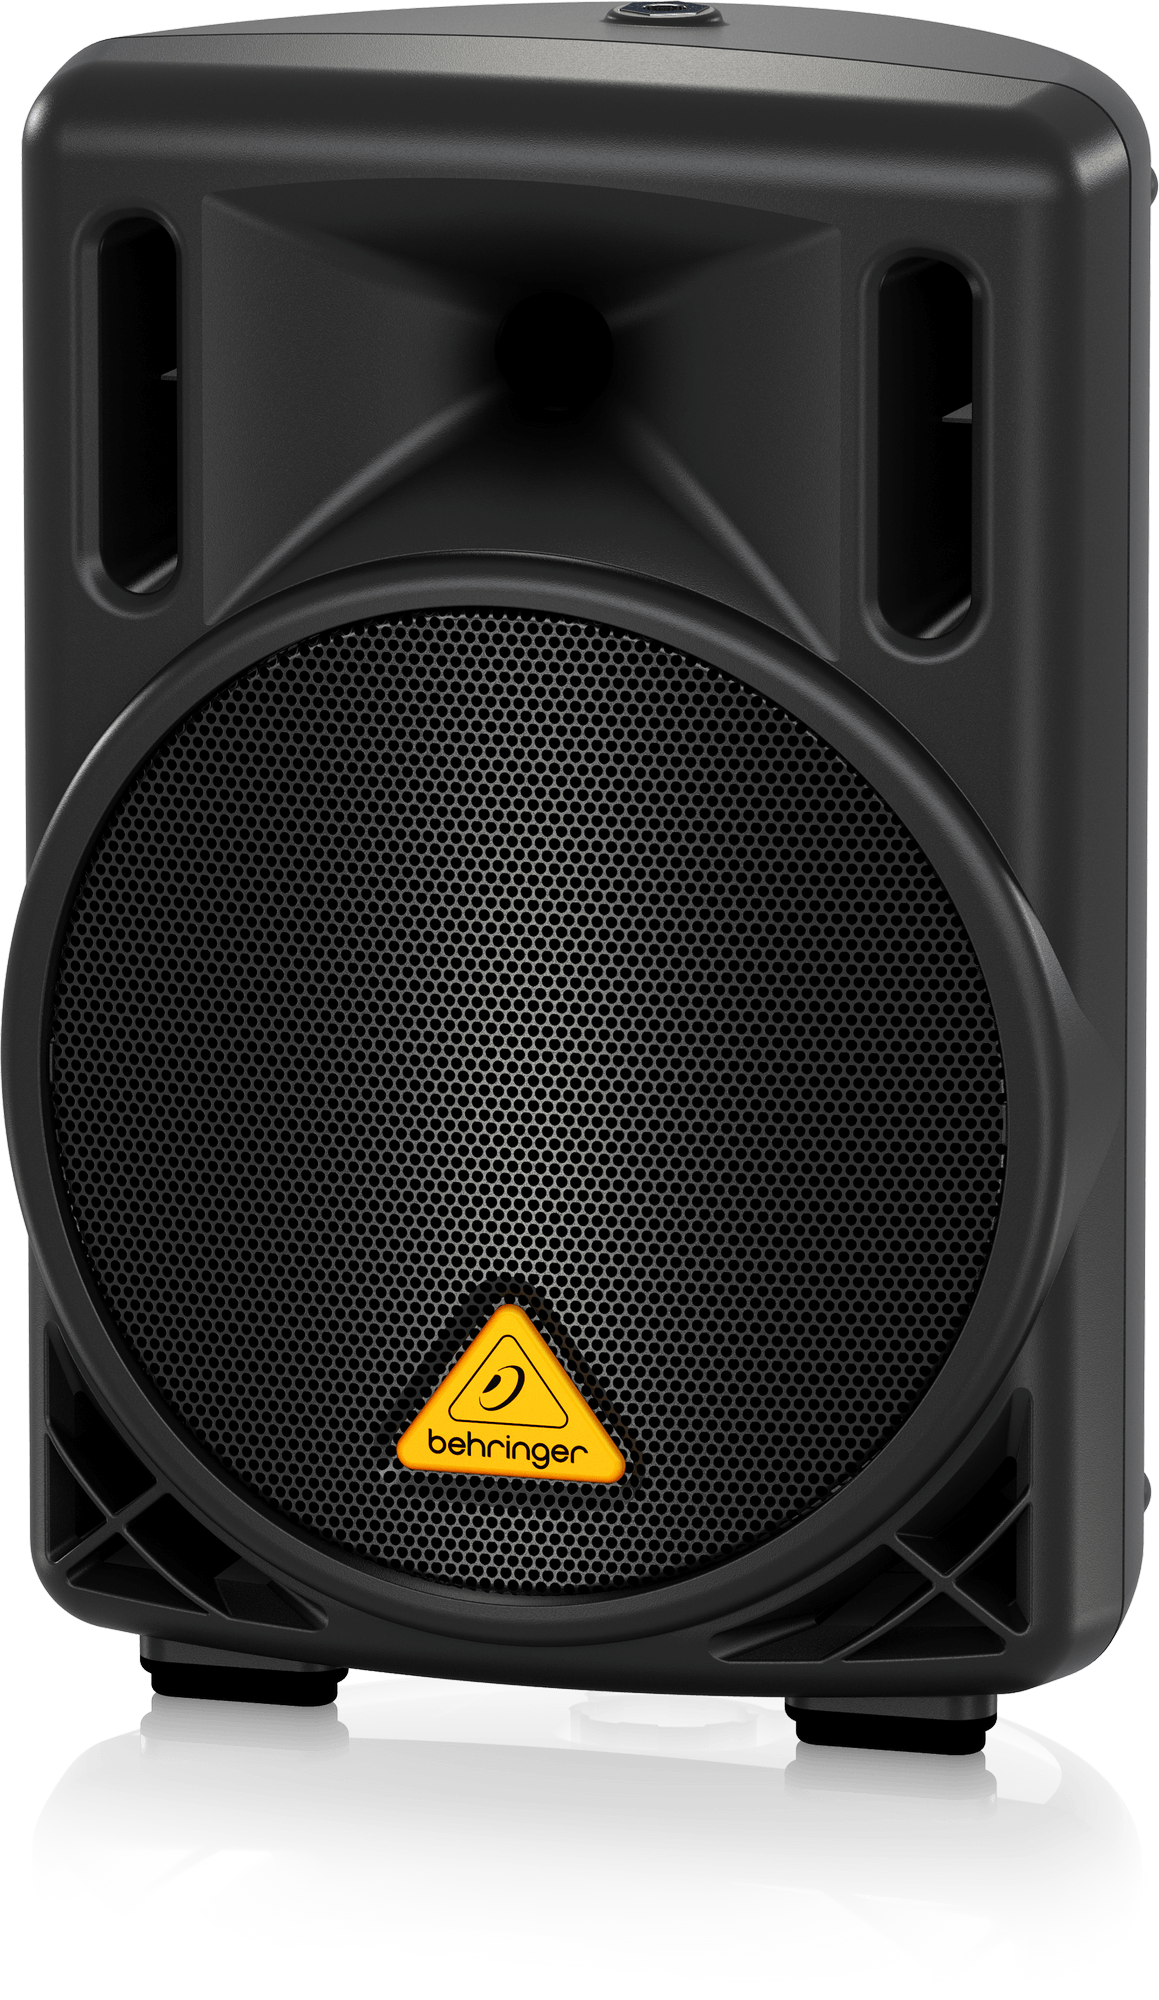 Behringer Eurolive B208D 200W 8" Powered Speaker - Pair | BEHRINGER , Zoso Music